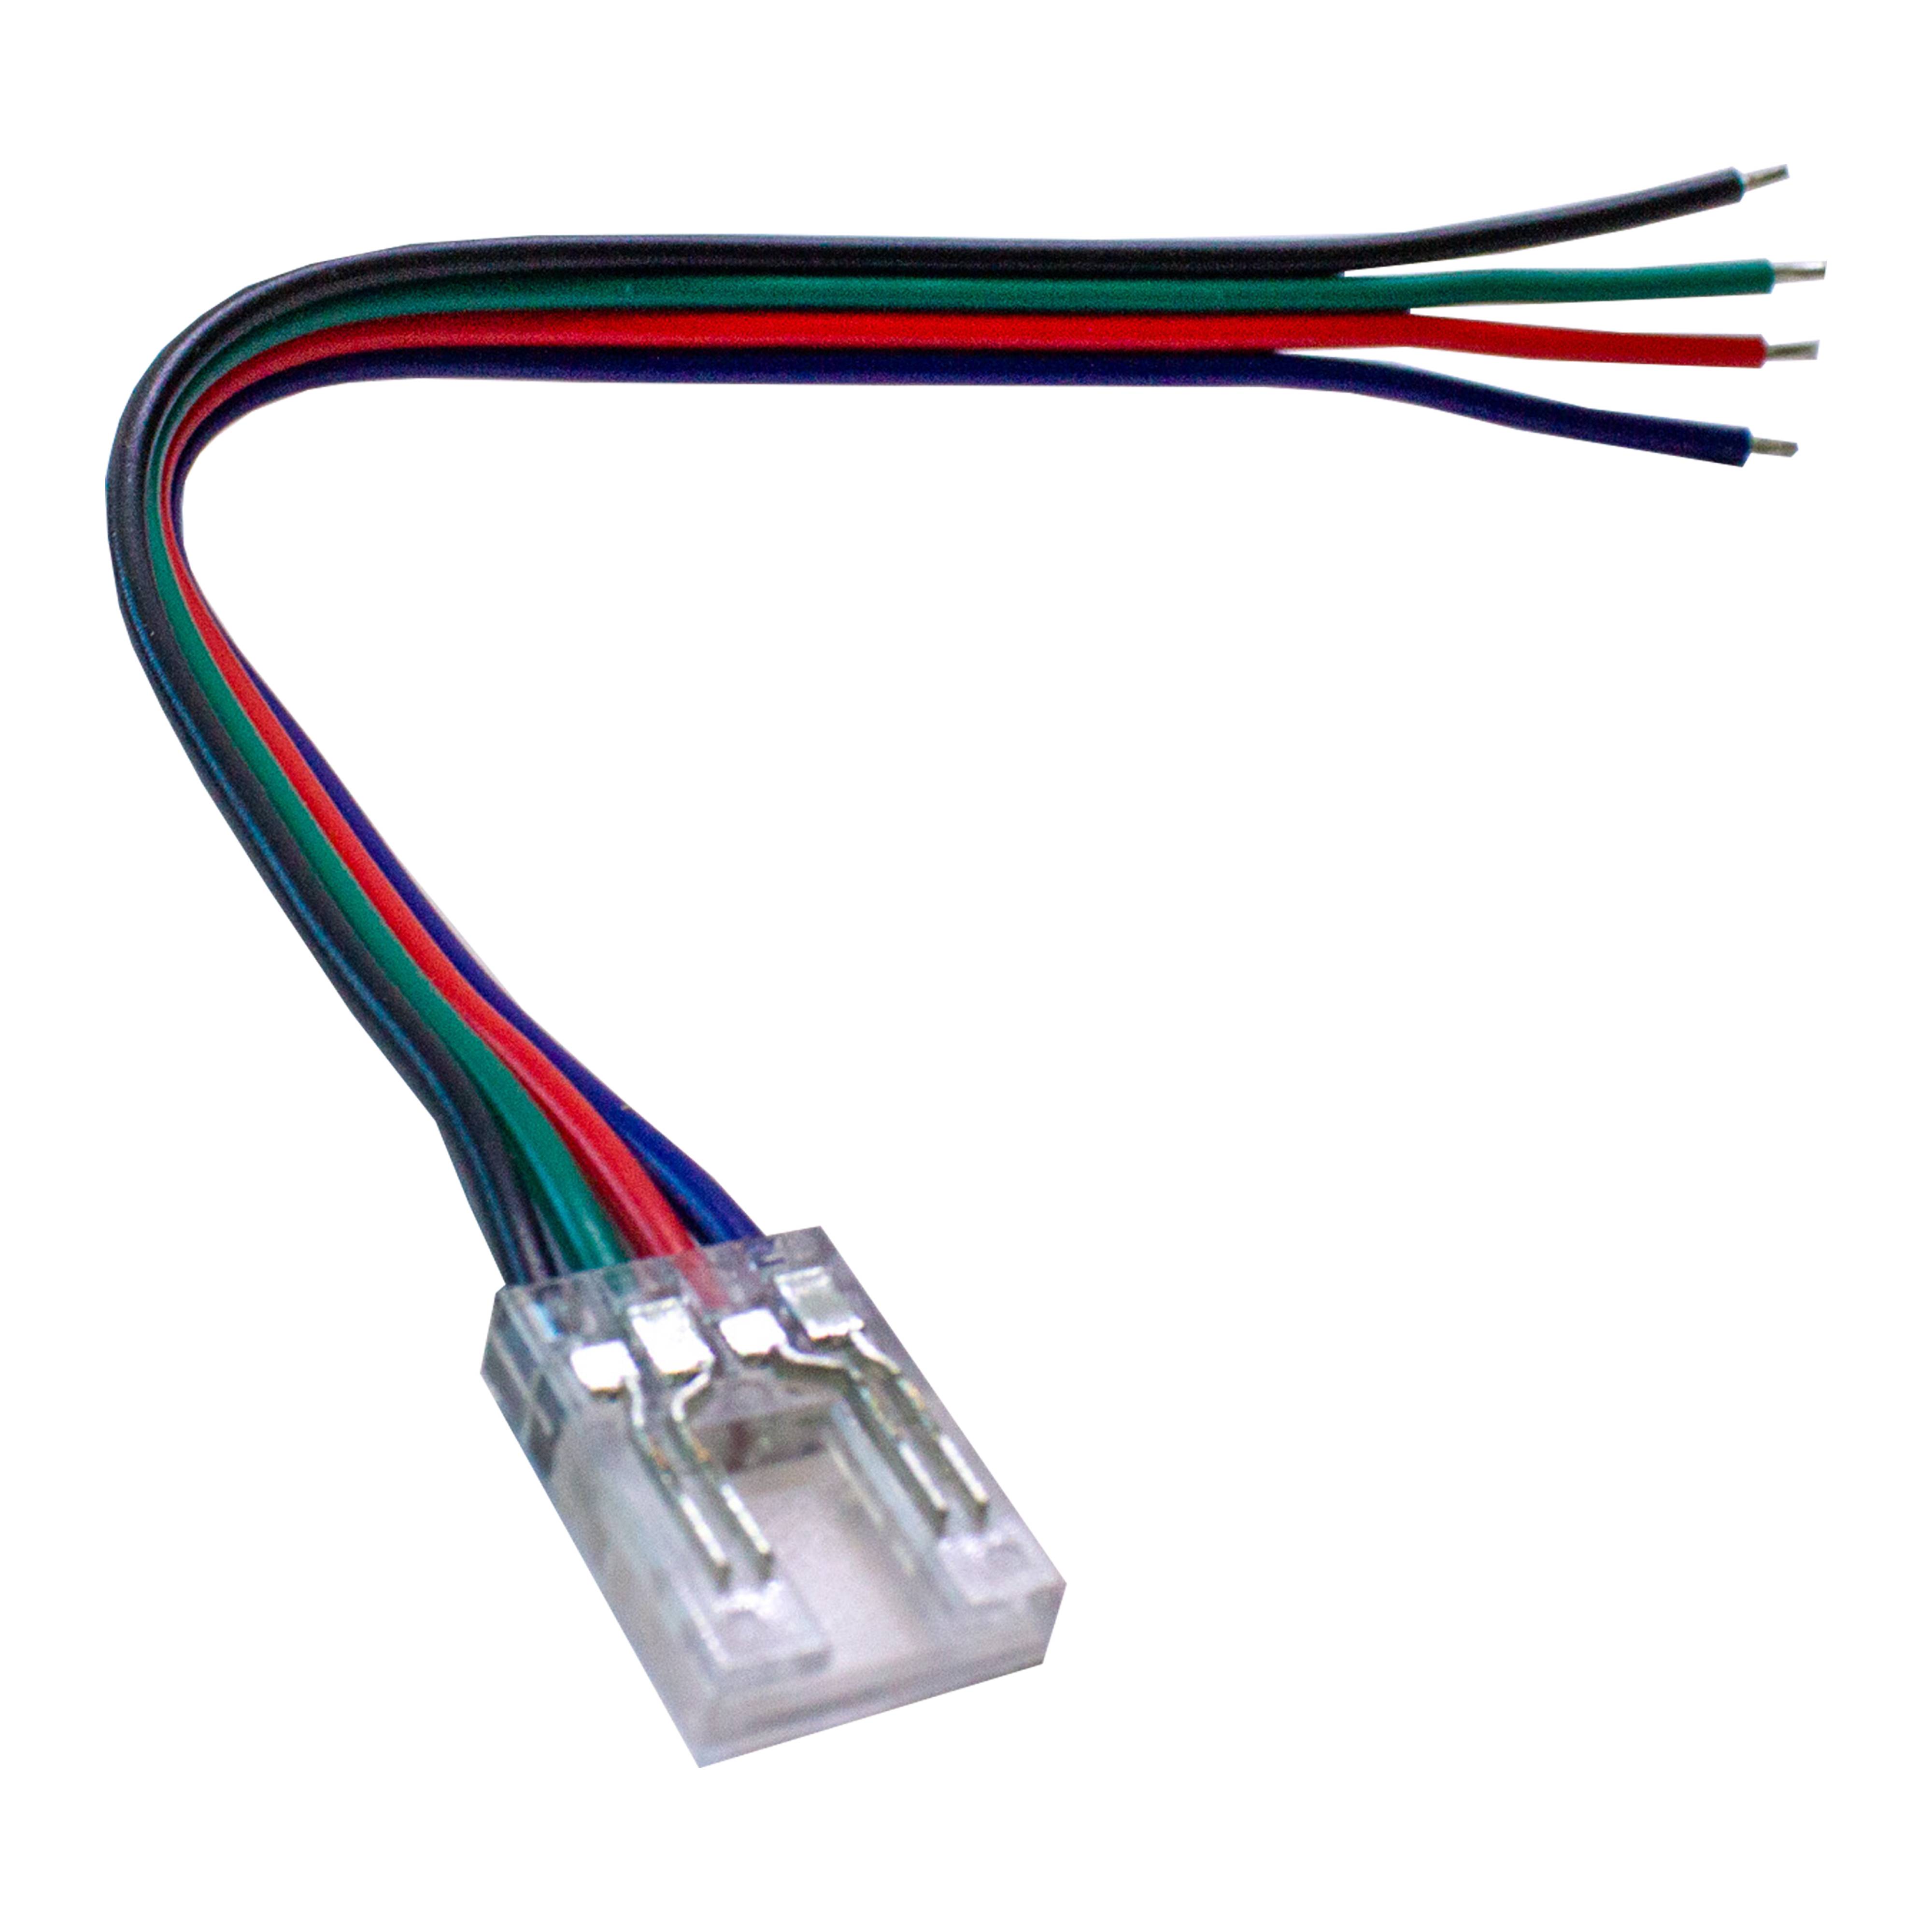 Connecteur ruban LED RGB 10mm pour contrôleur 4 broches